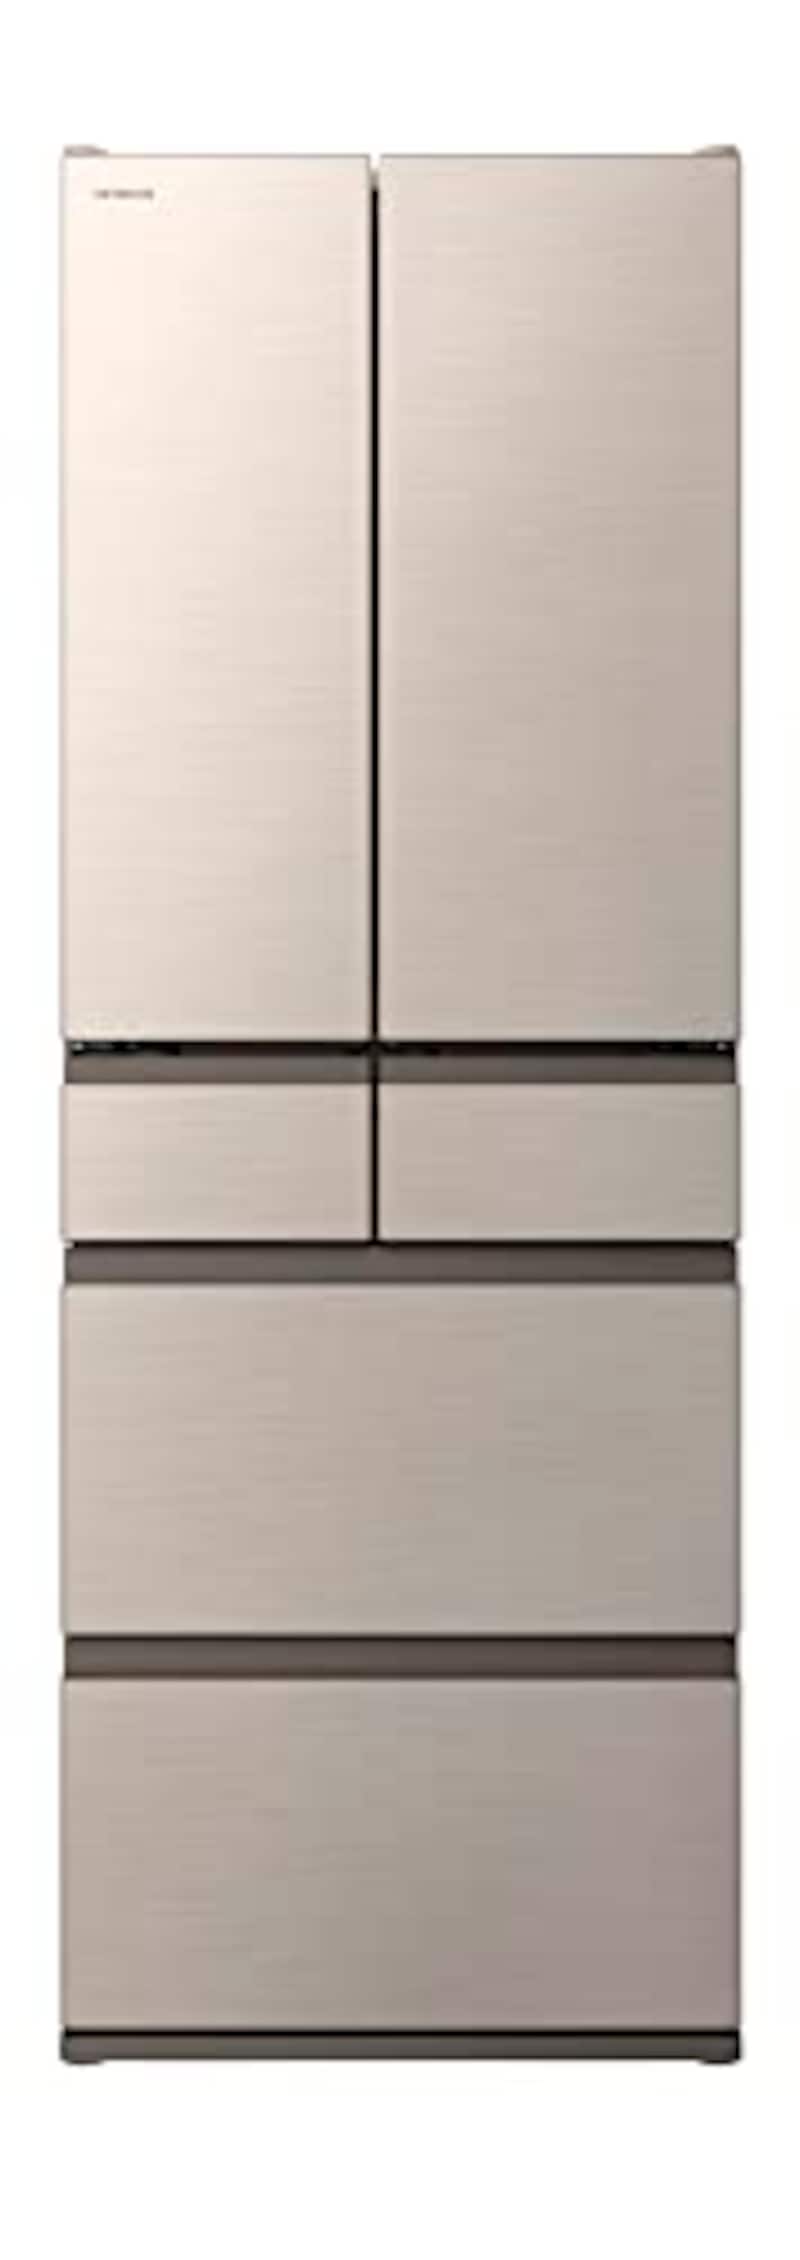 日立,冷蔵庫 540L  幅65cmフレンチドア,R-HW54S